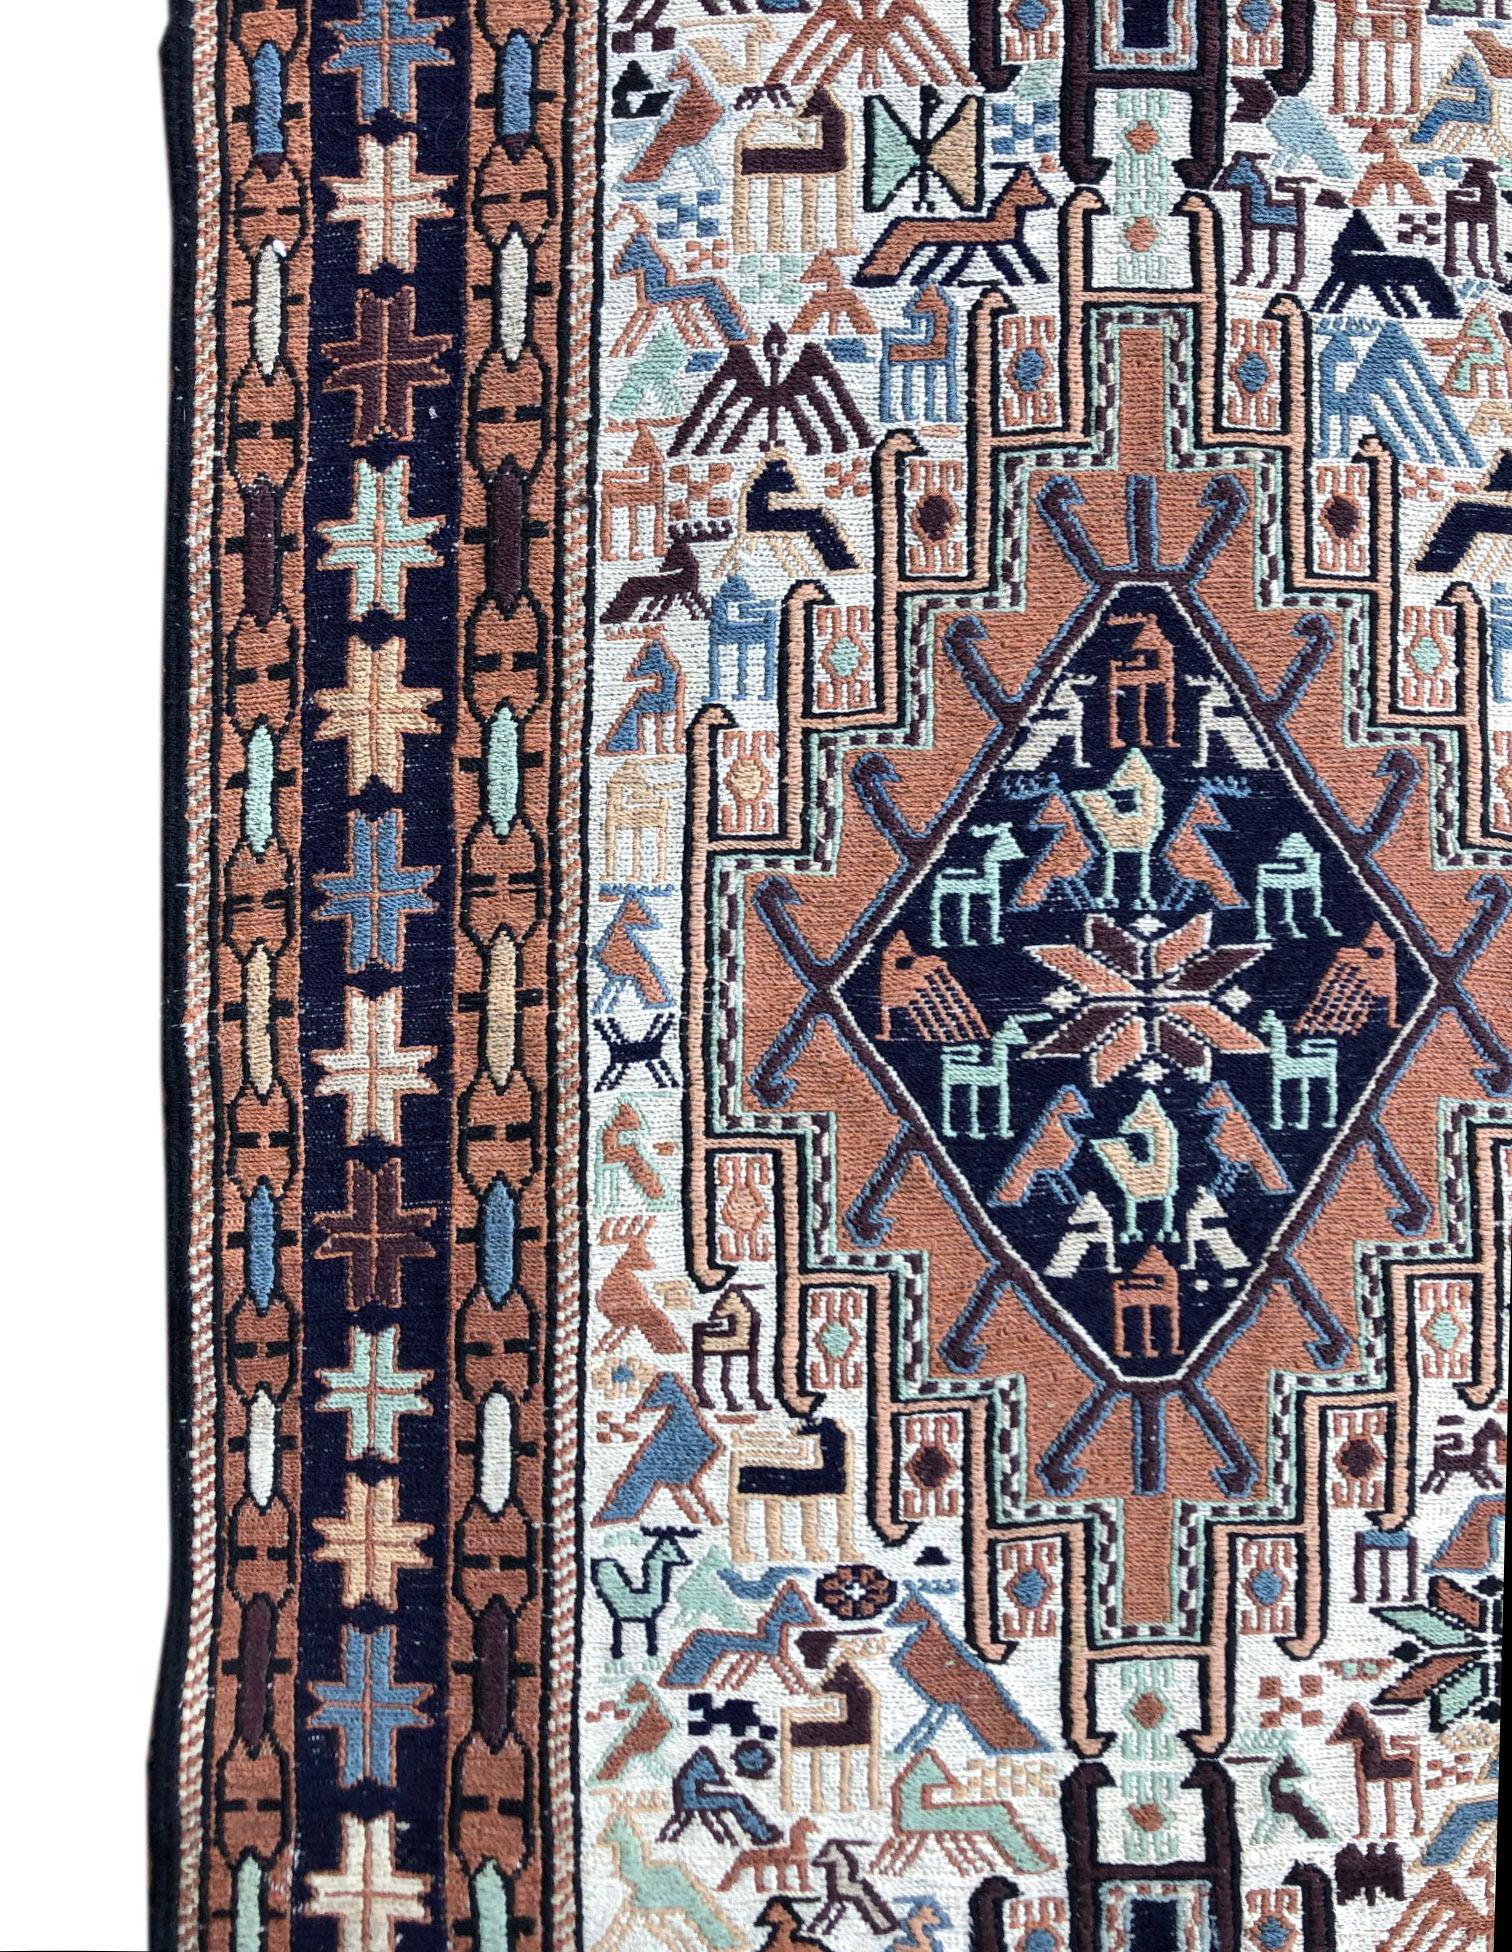 Persian Sumak Multi-Color Tribal Animal Motif Kilim Rug For Sale 4